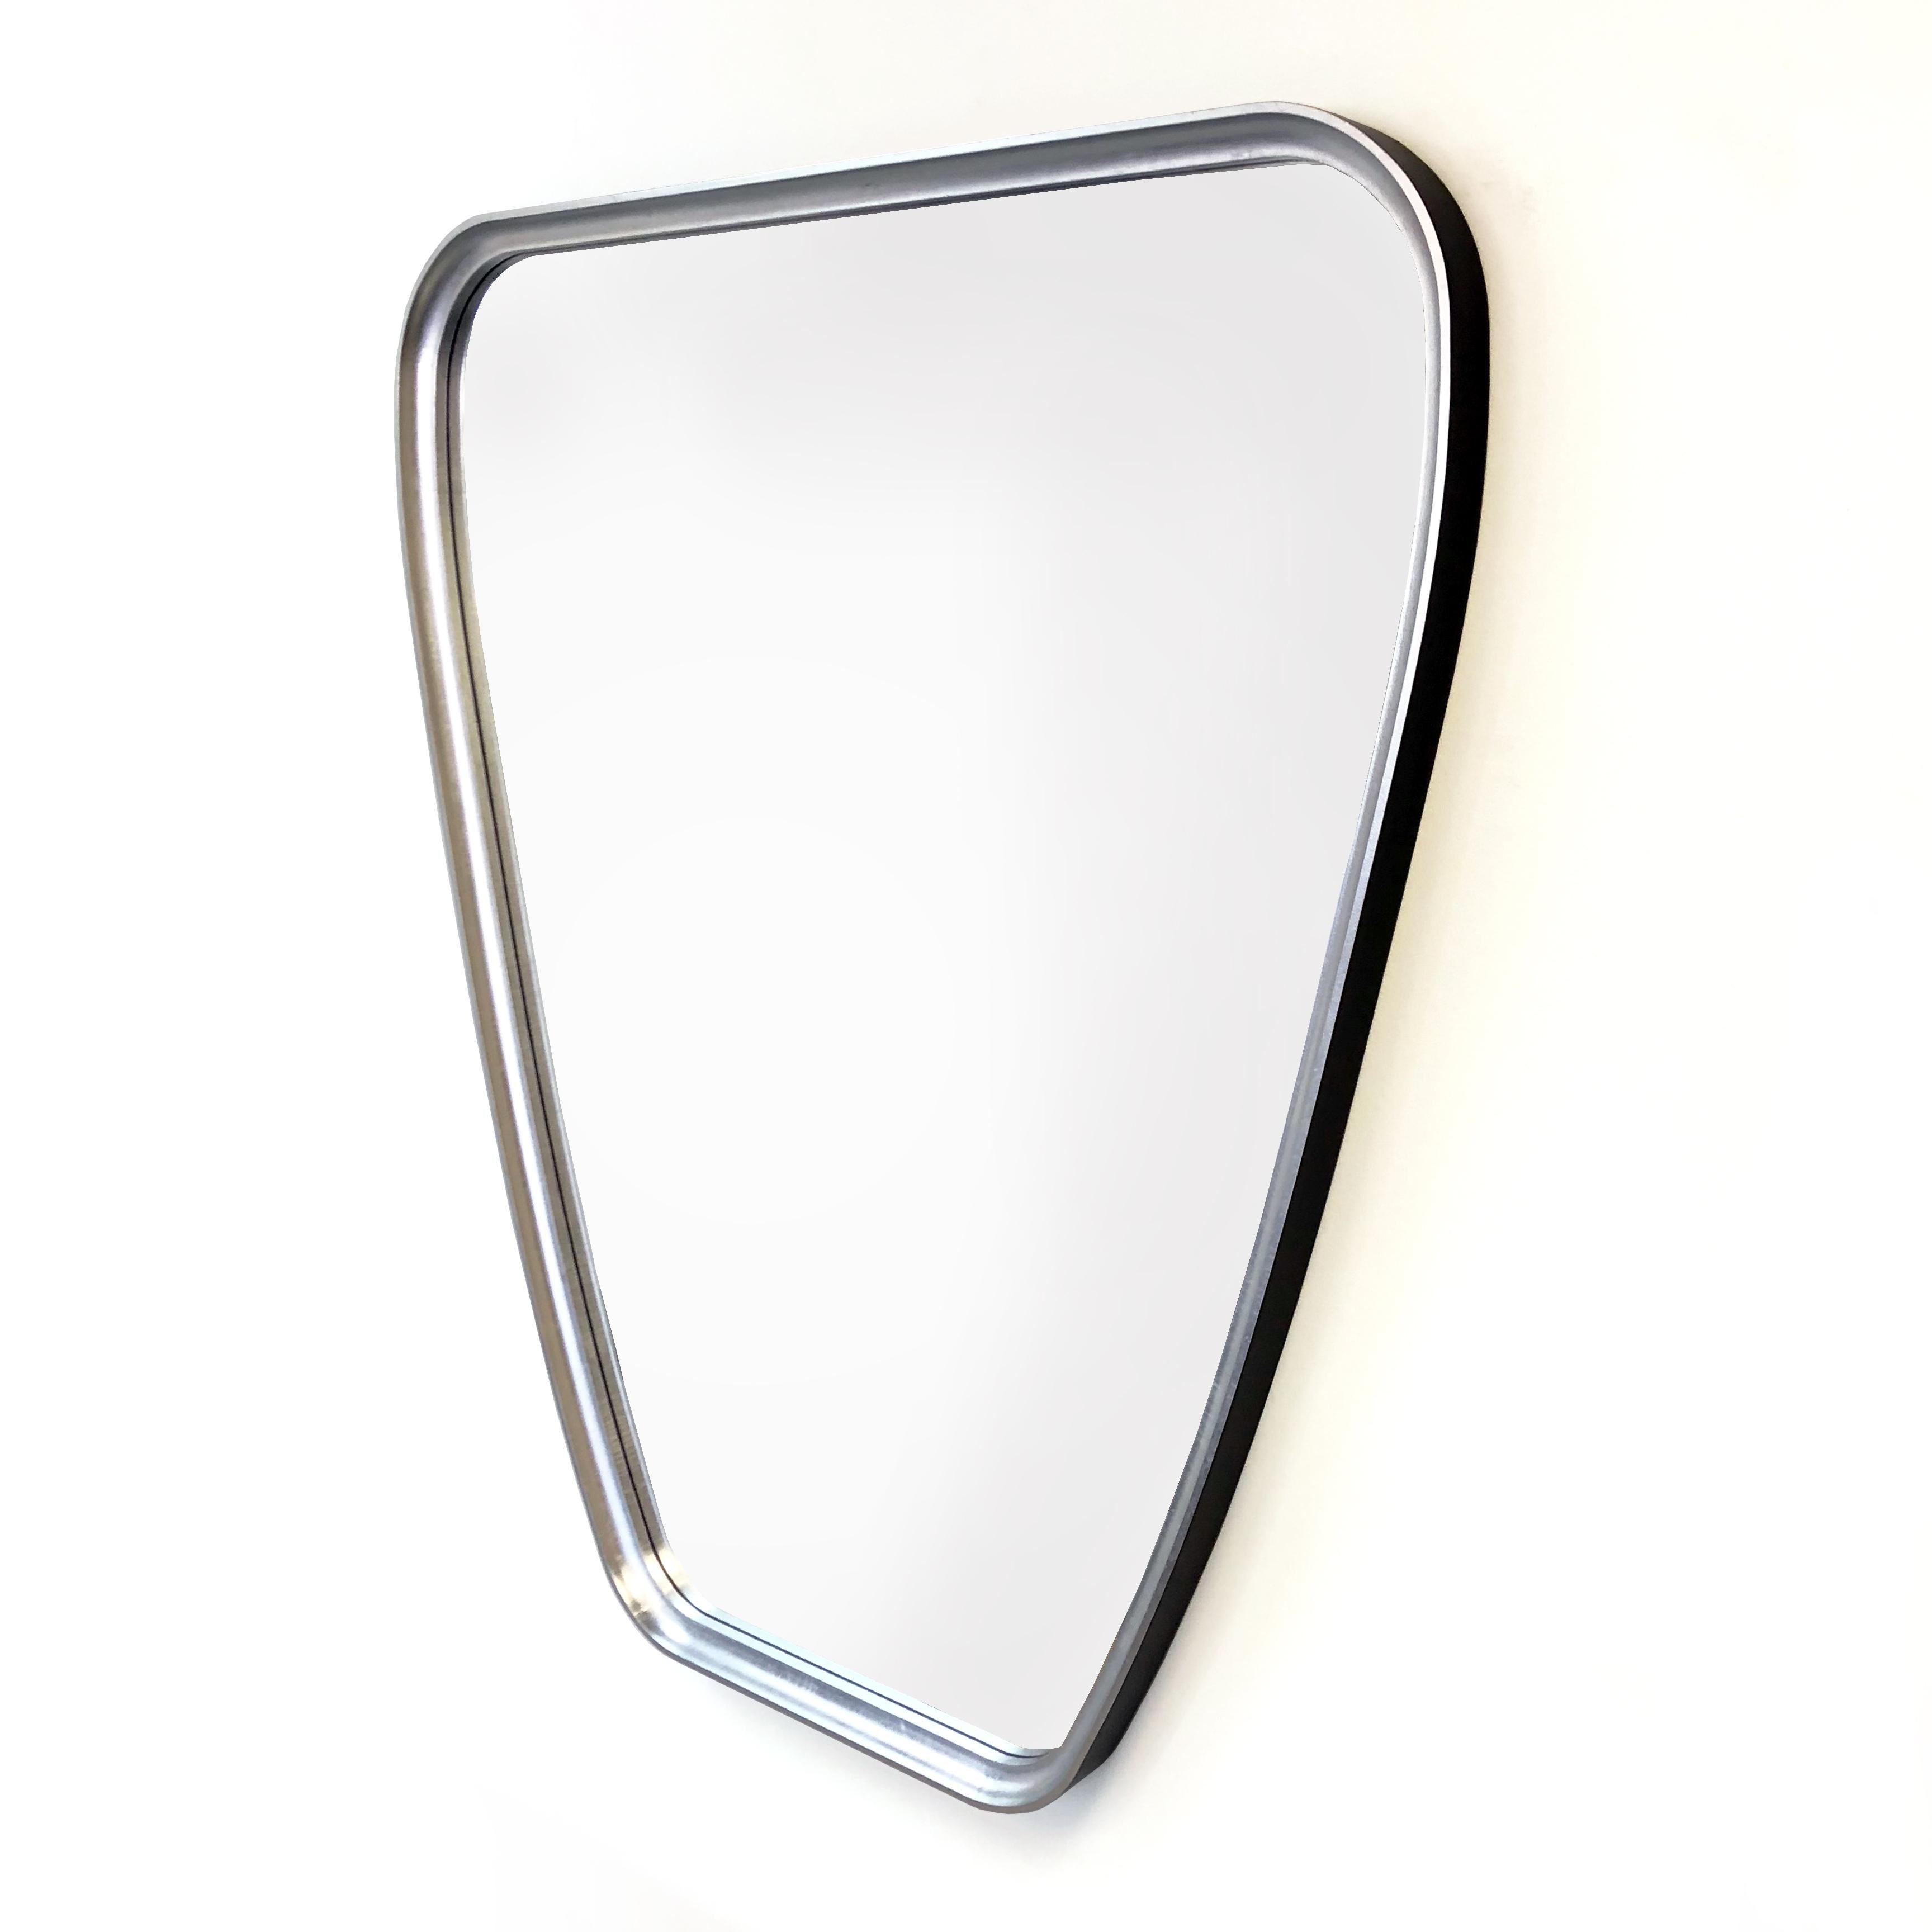 The “Crest Mirror